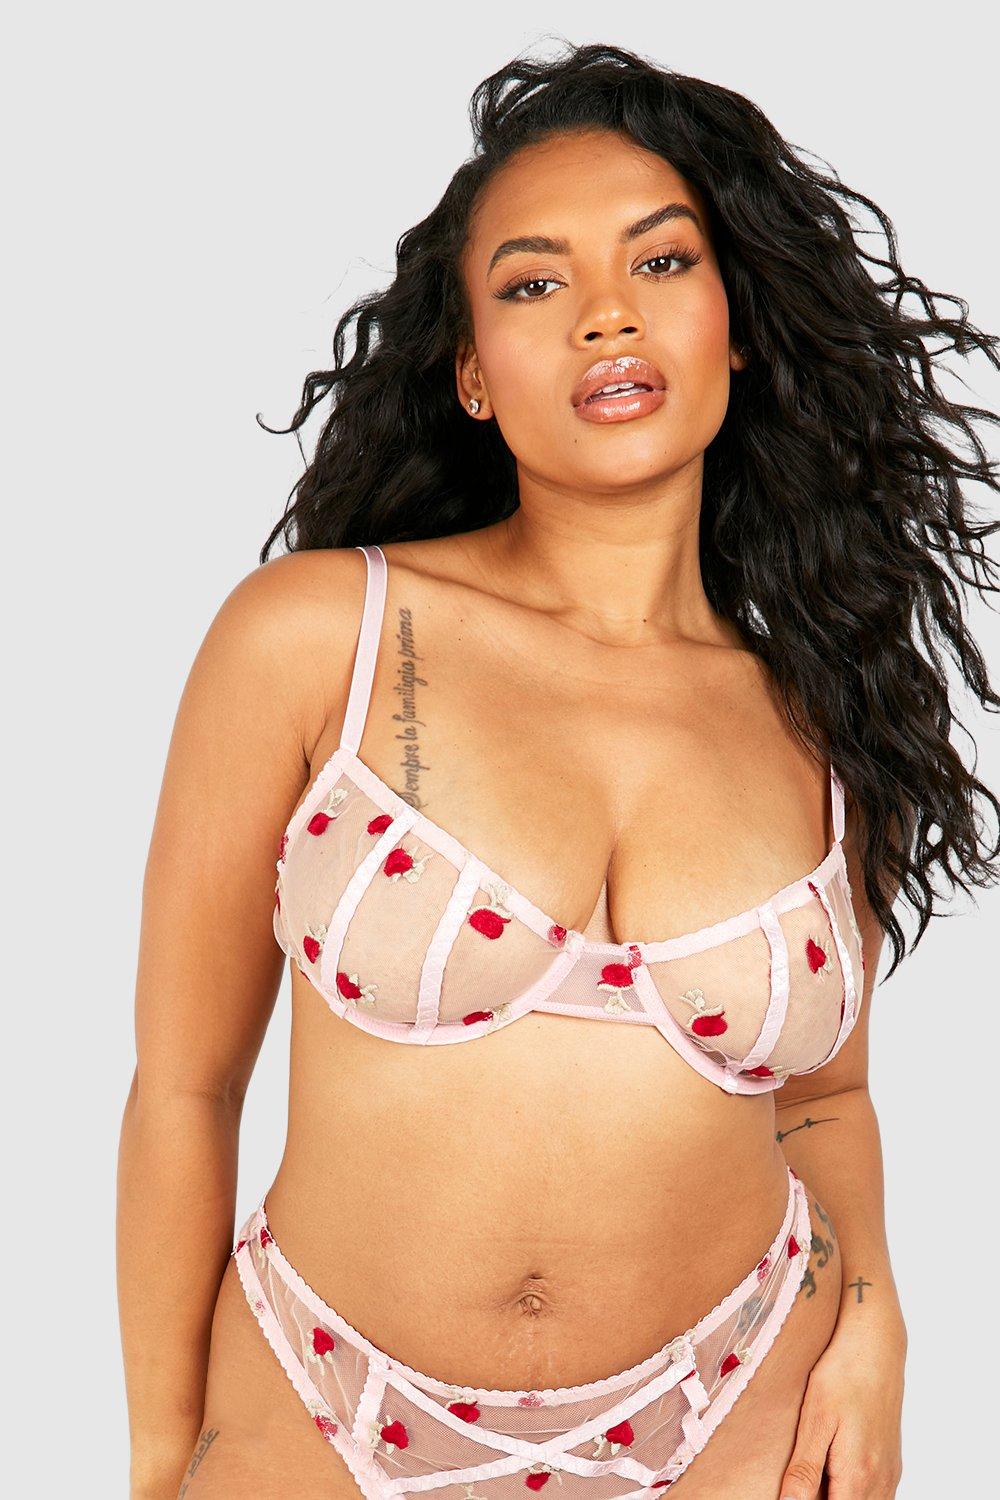 Desert Rose Plus Size Bra Underwear Lingerie Set - TGC Boutique